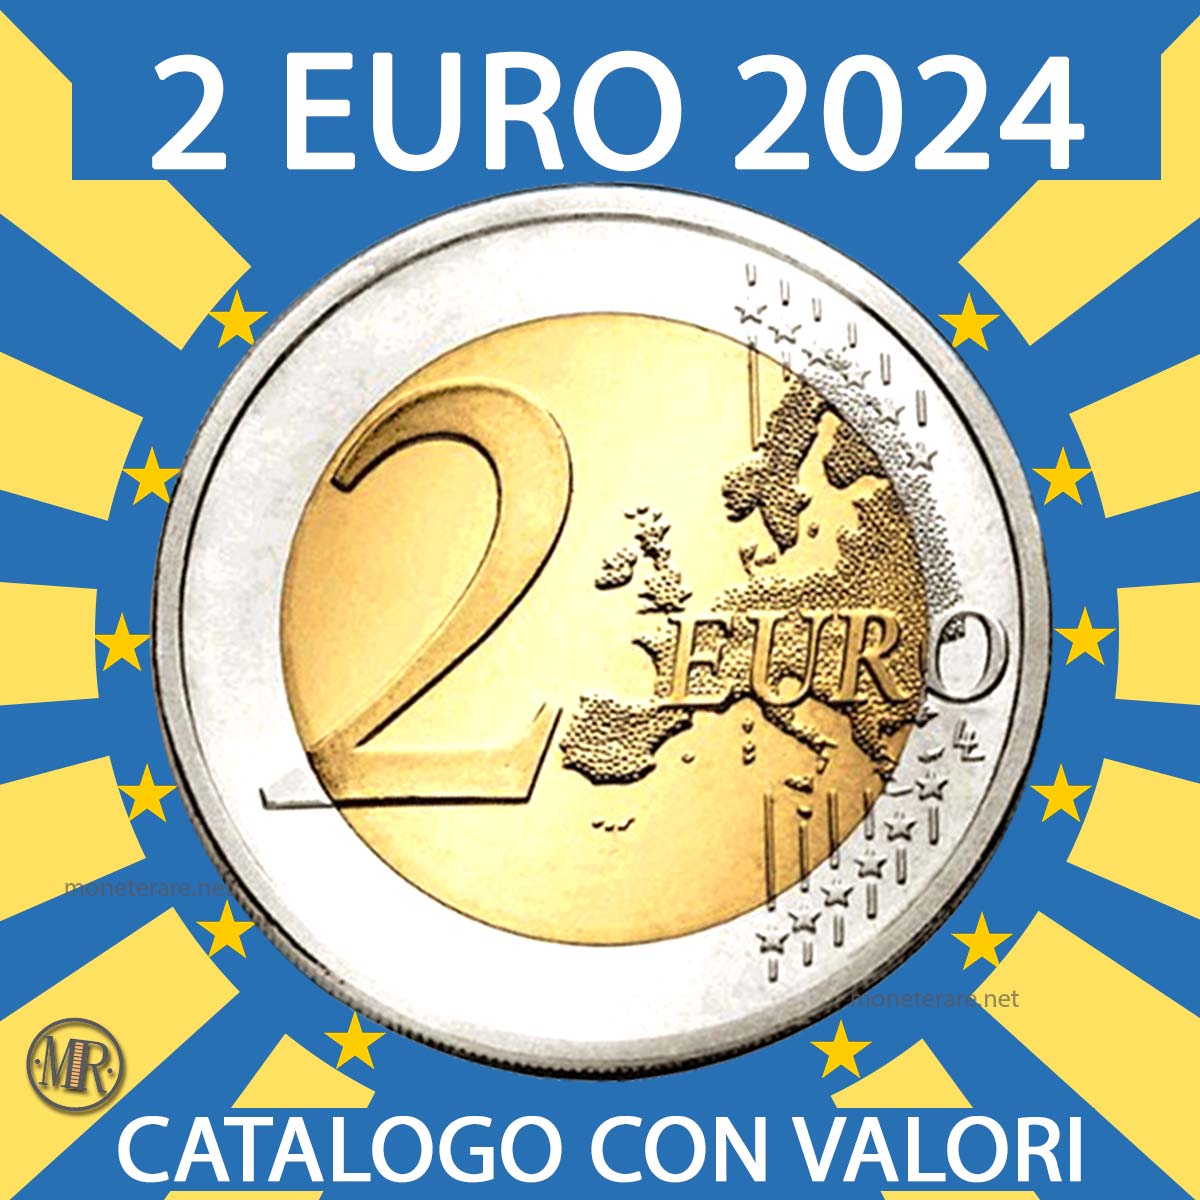 2 Euro 2024 - Valore di tutti i 2 Euro Commemorativi 2024